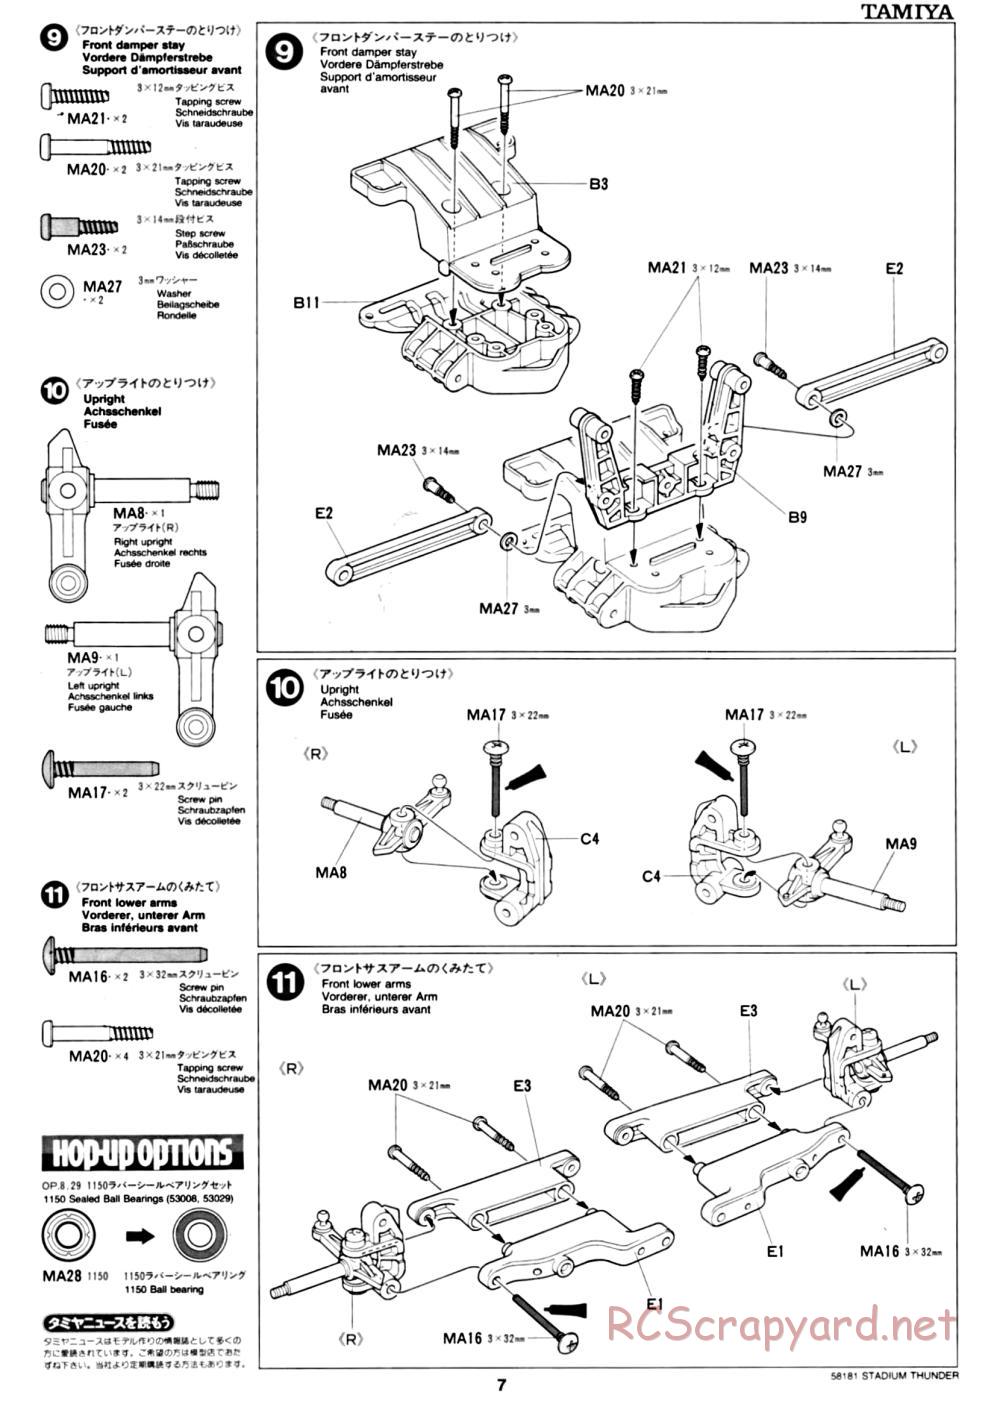 Tamiya - Stadium Thunder Chassis - Manual - Page 7